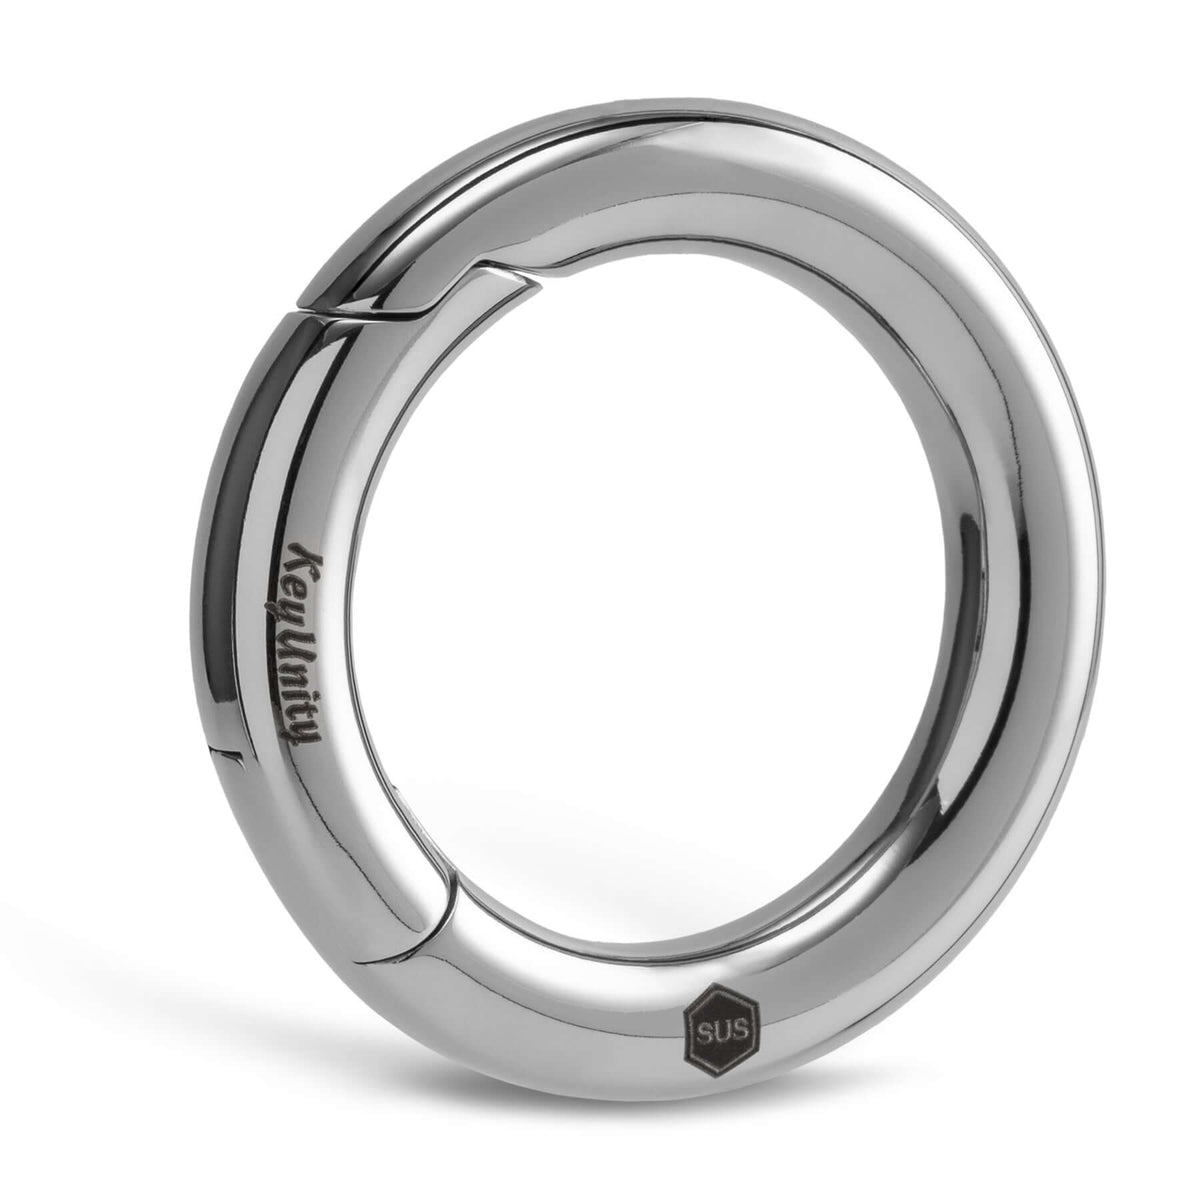 KS06 Stainless Steel Carabiner Key Ring